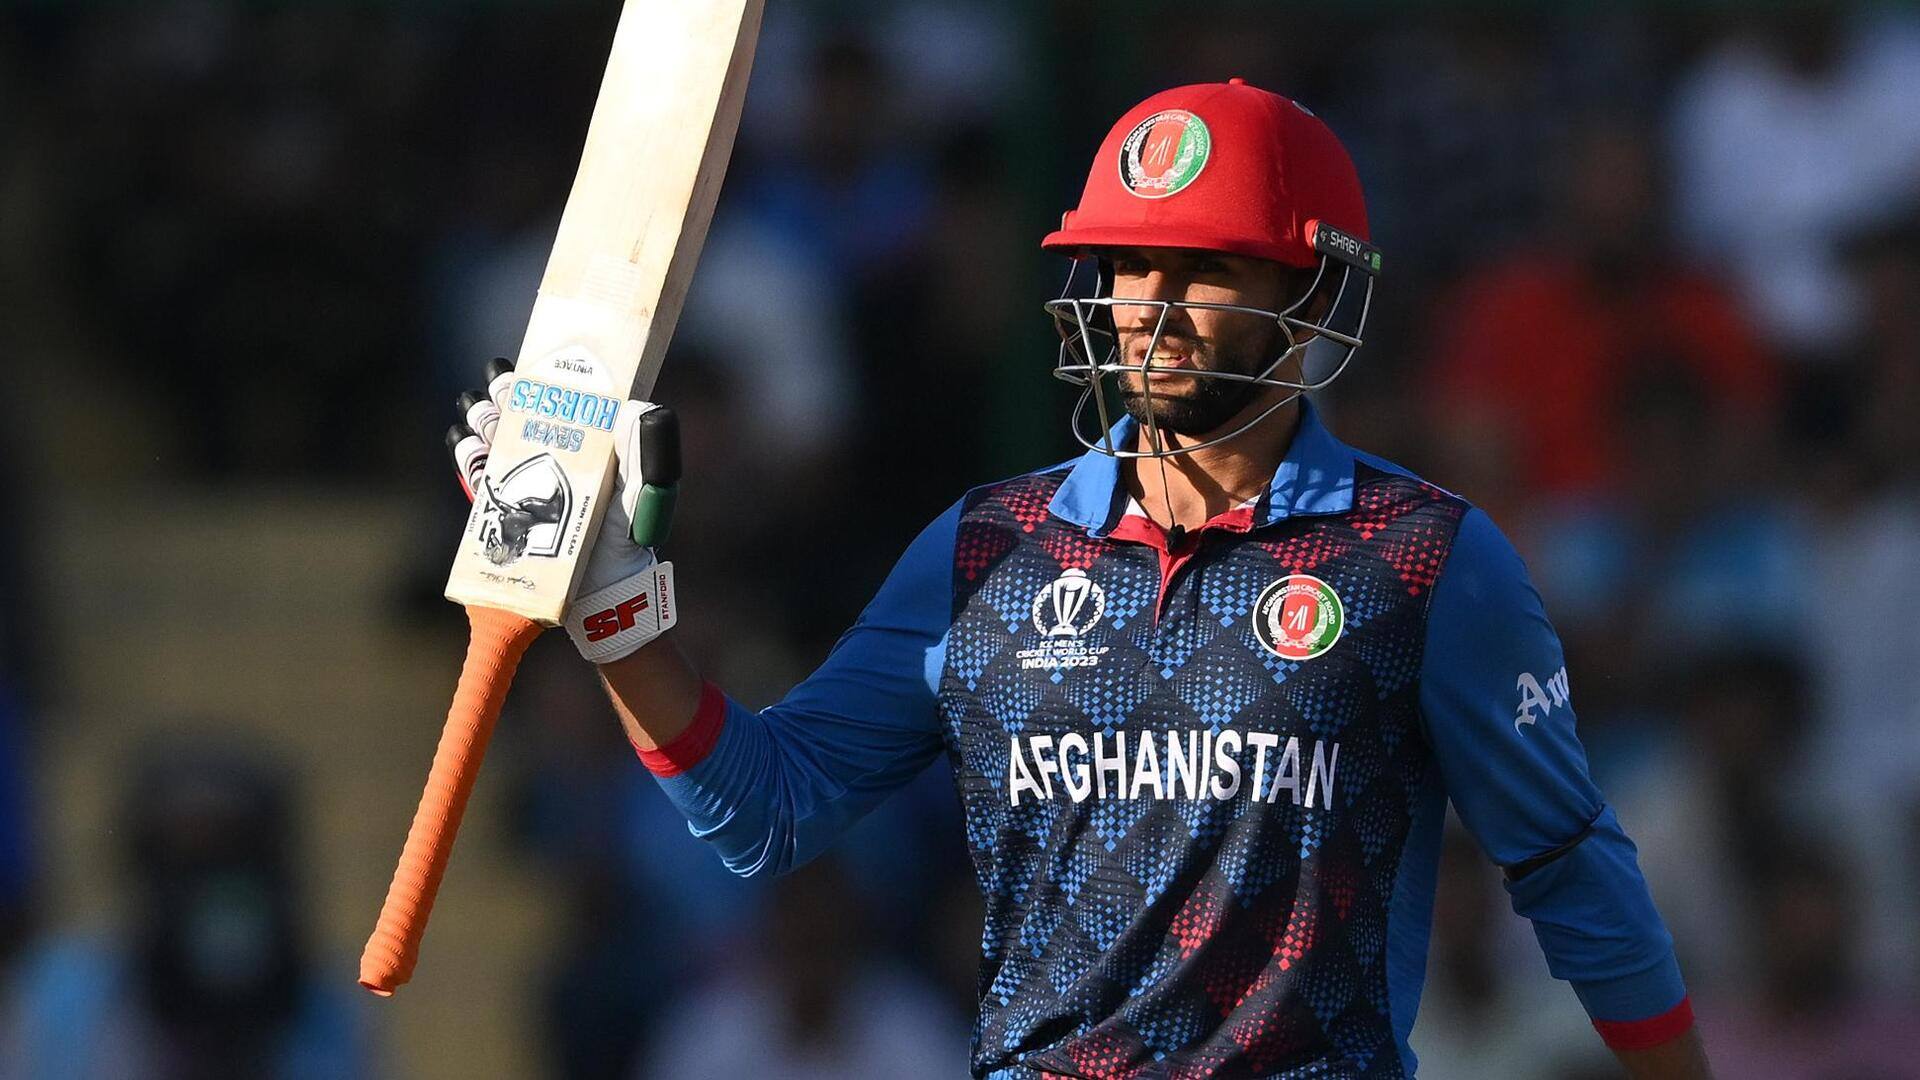 भारत बनाम अफगानिस्तान: अजमतुल्लाह उमरजई ने खेली वनडे करियर की सर्वश्रेष्ठ पारी, जानिए आंकड़े